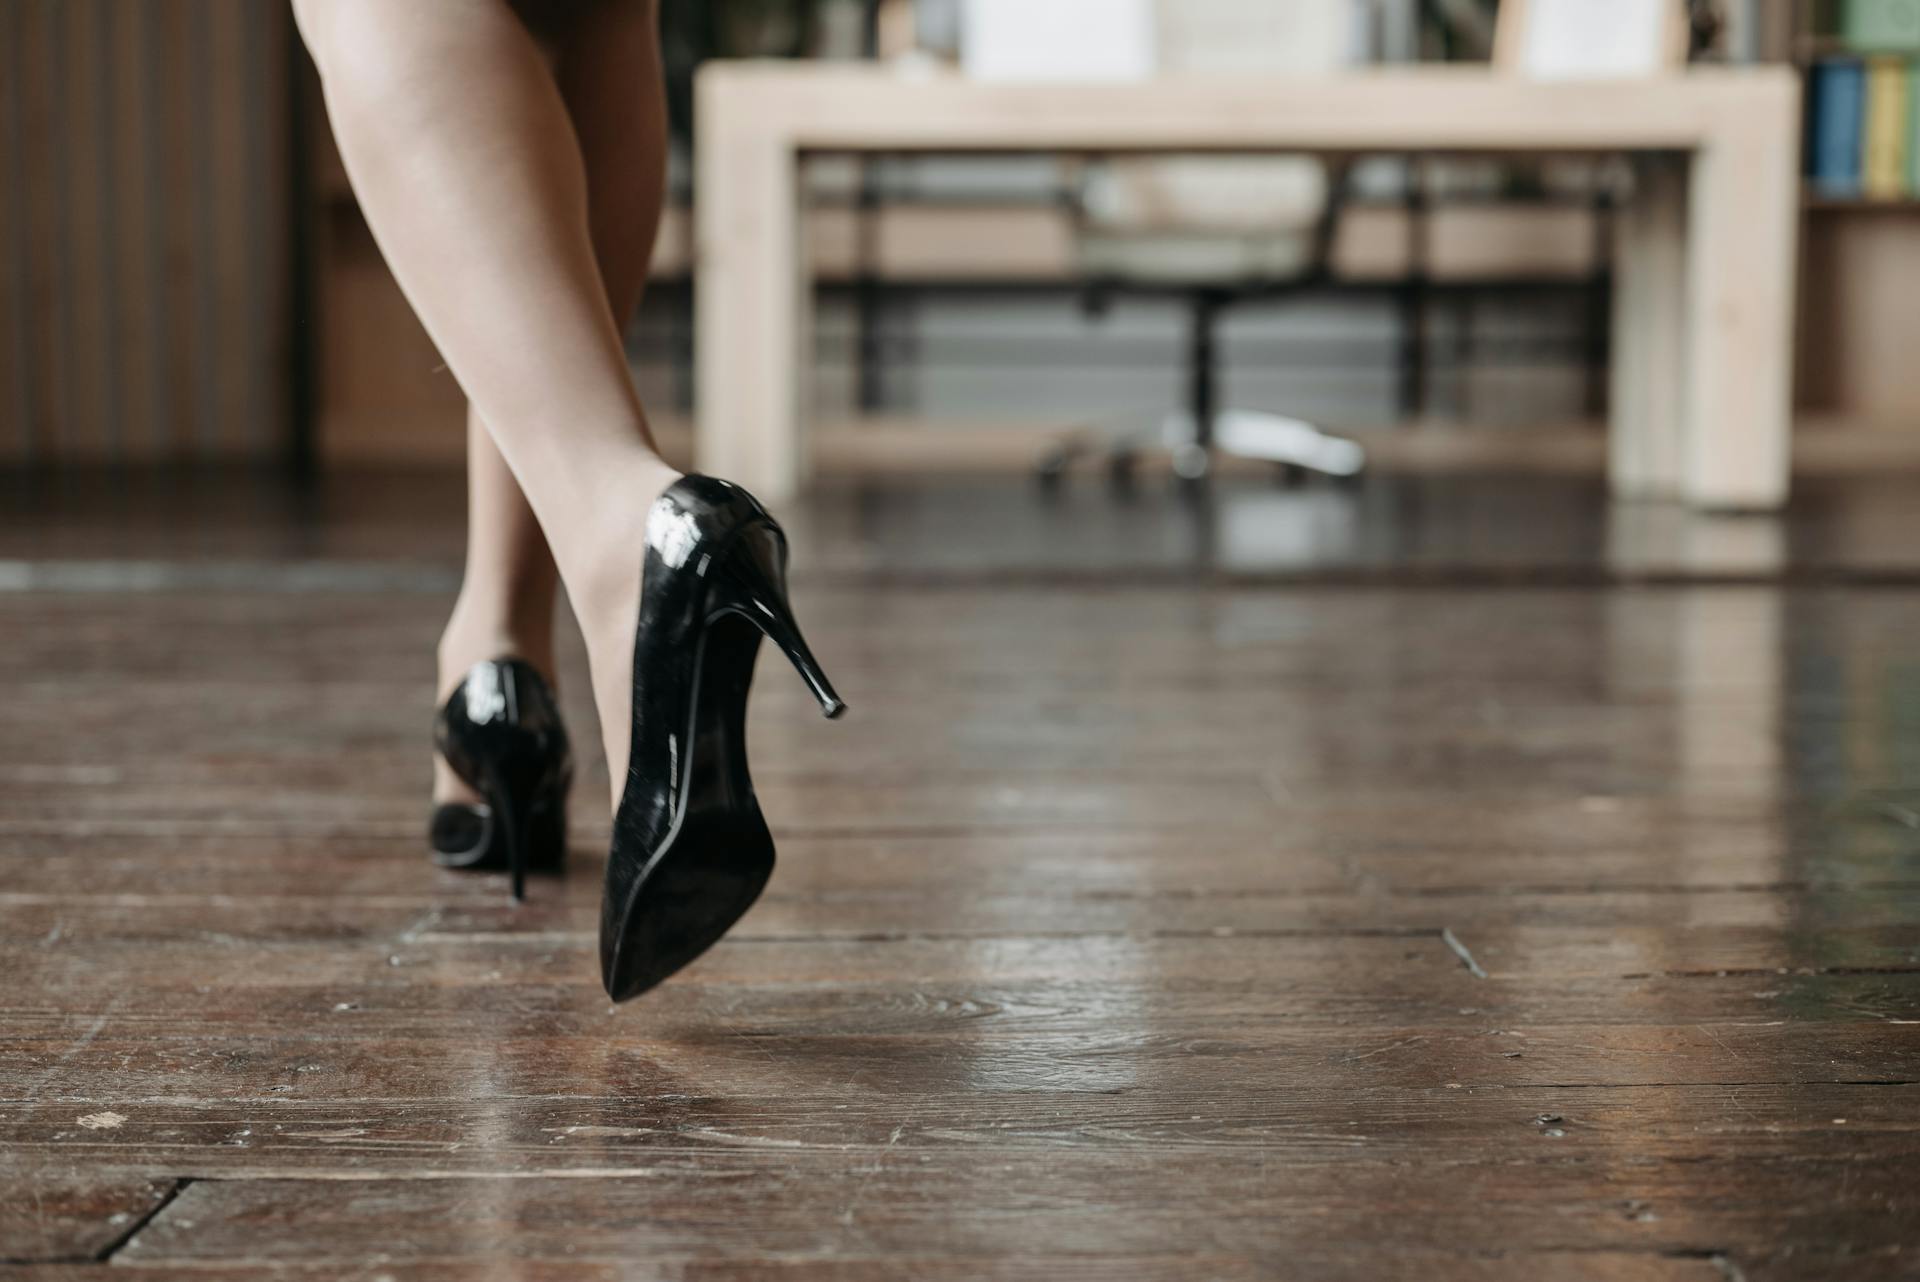 A woman wearing black heels | Source: Pexels